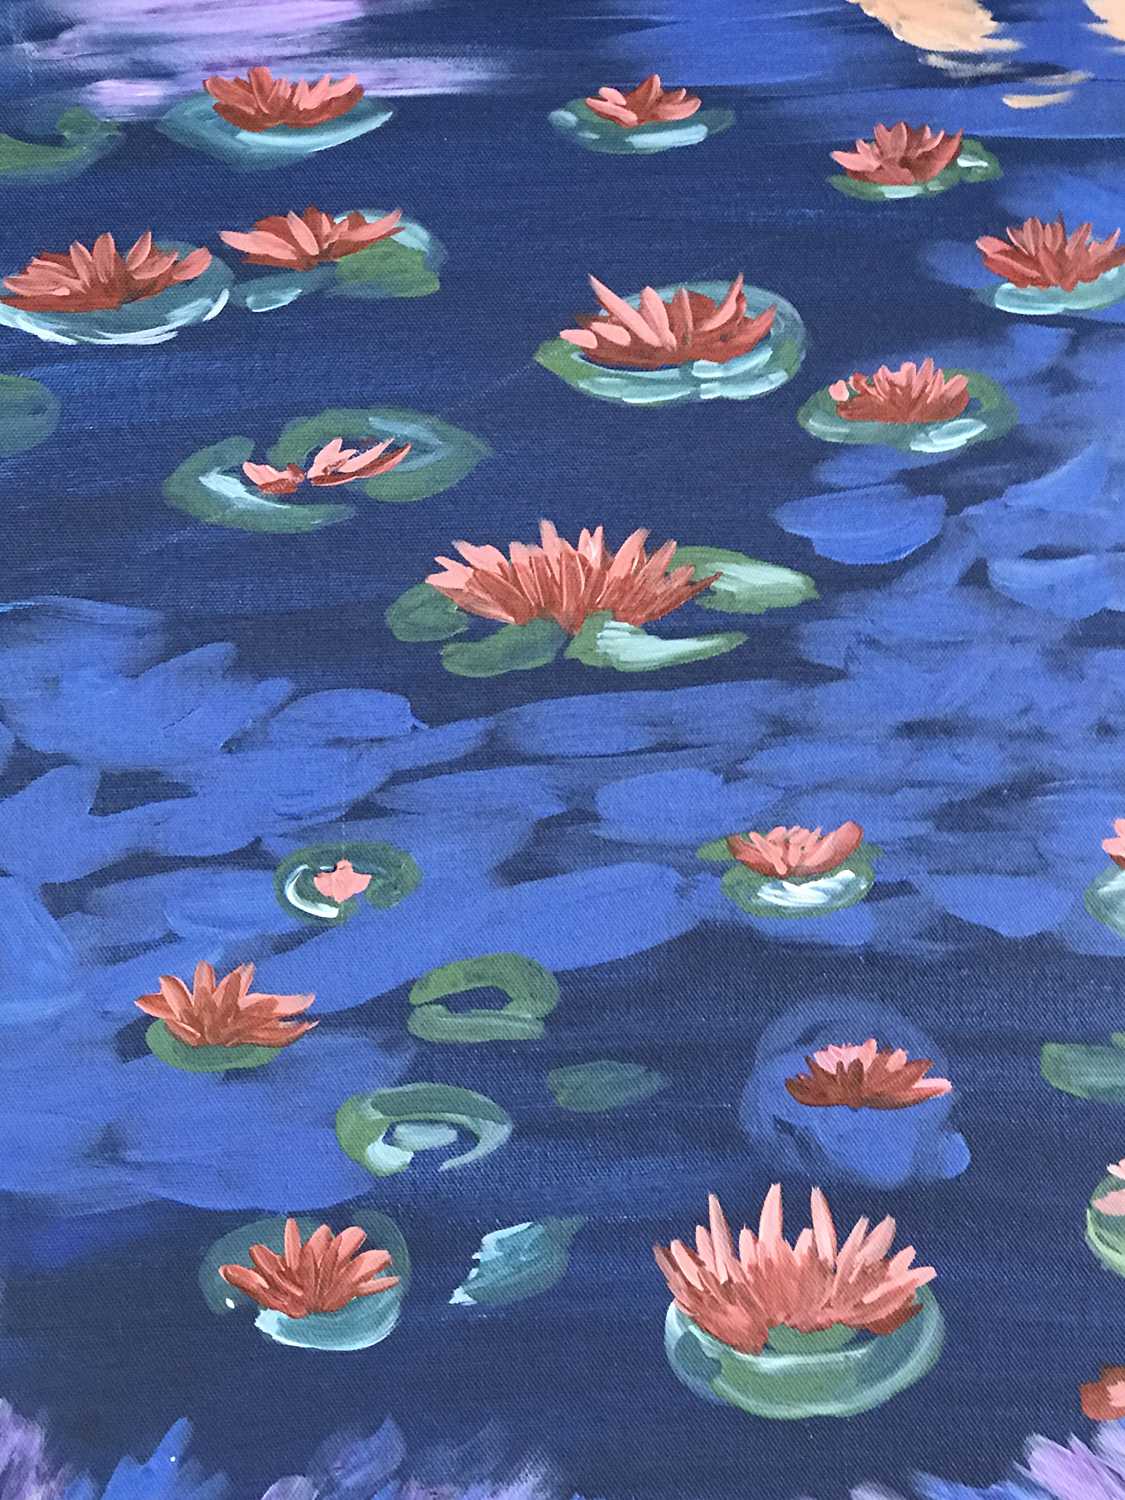 In Studio – Water Lilies